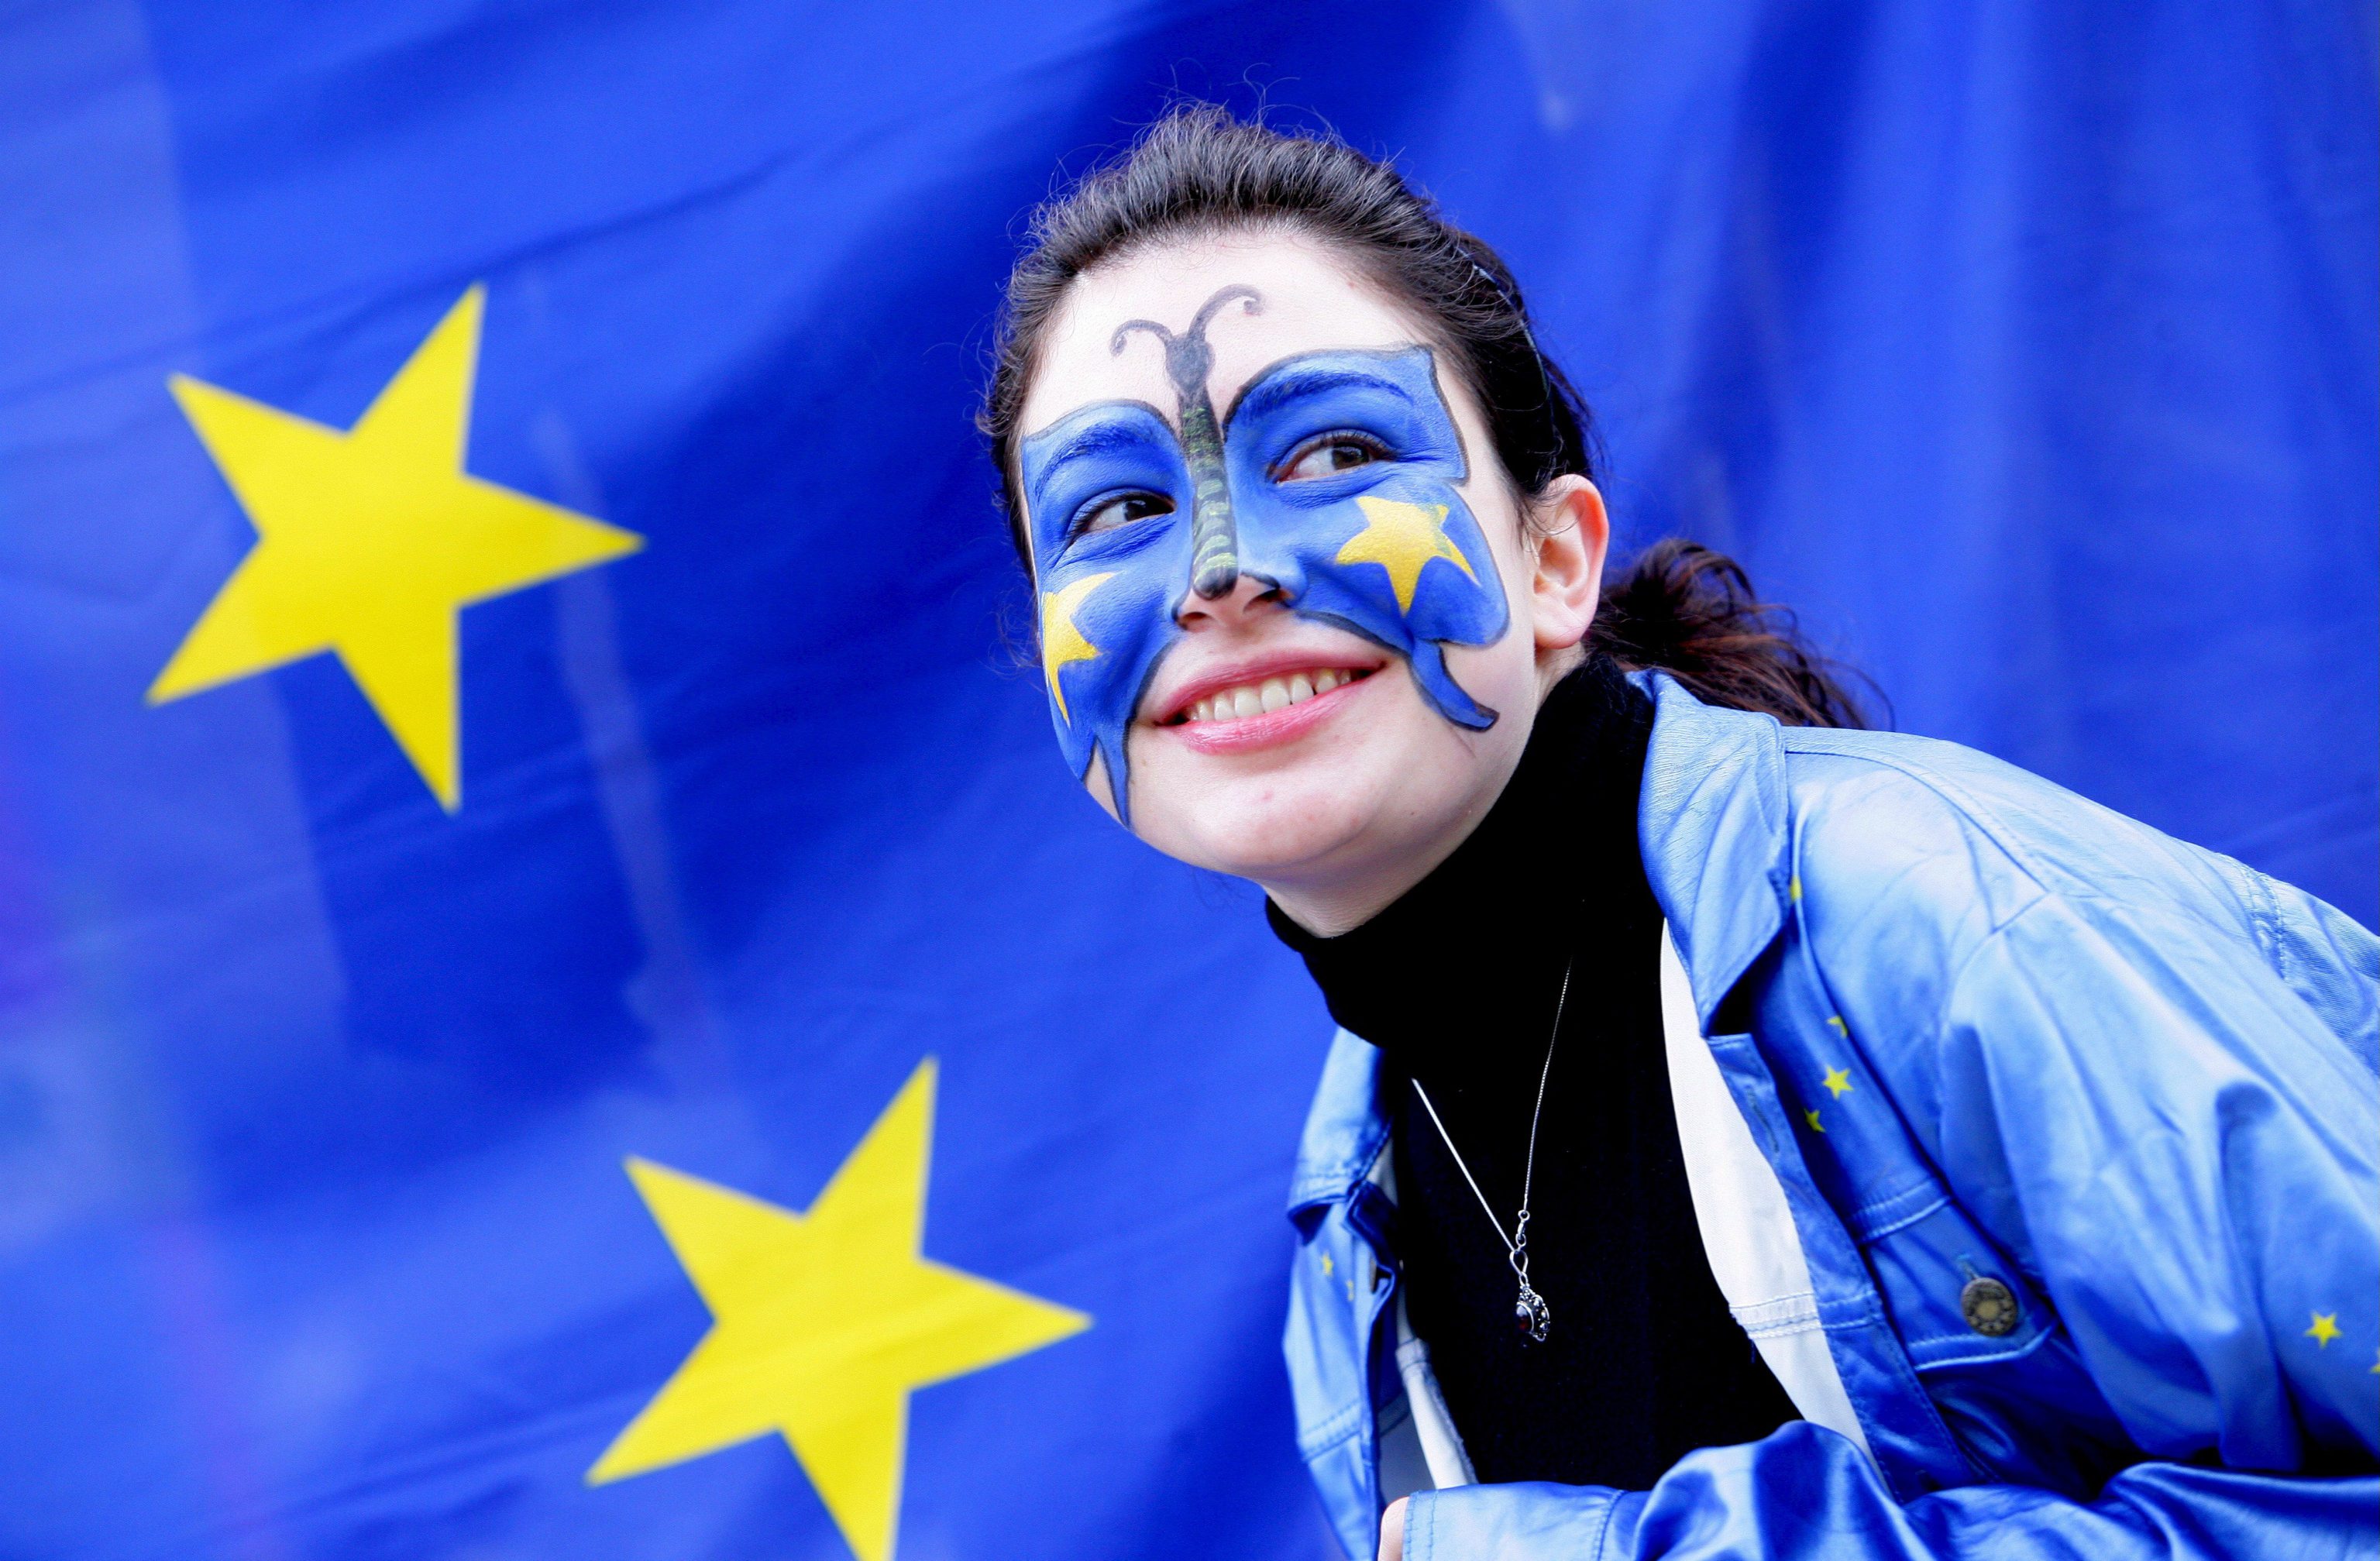 Noi giovani europei abbiamo voglia di Europa